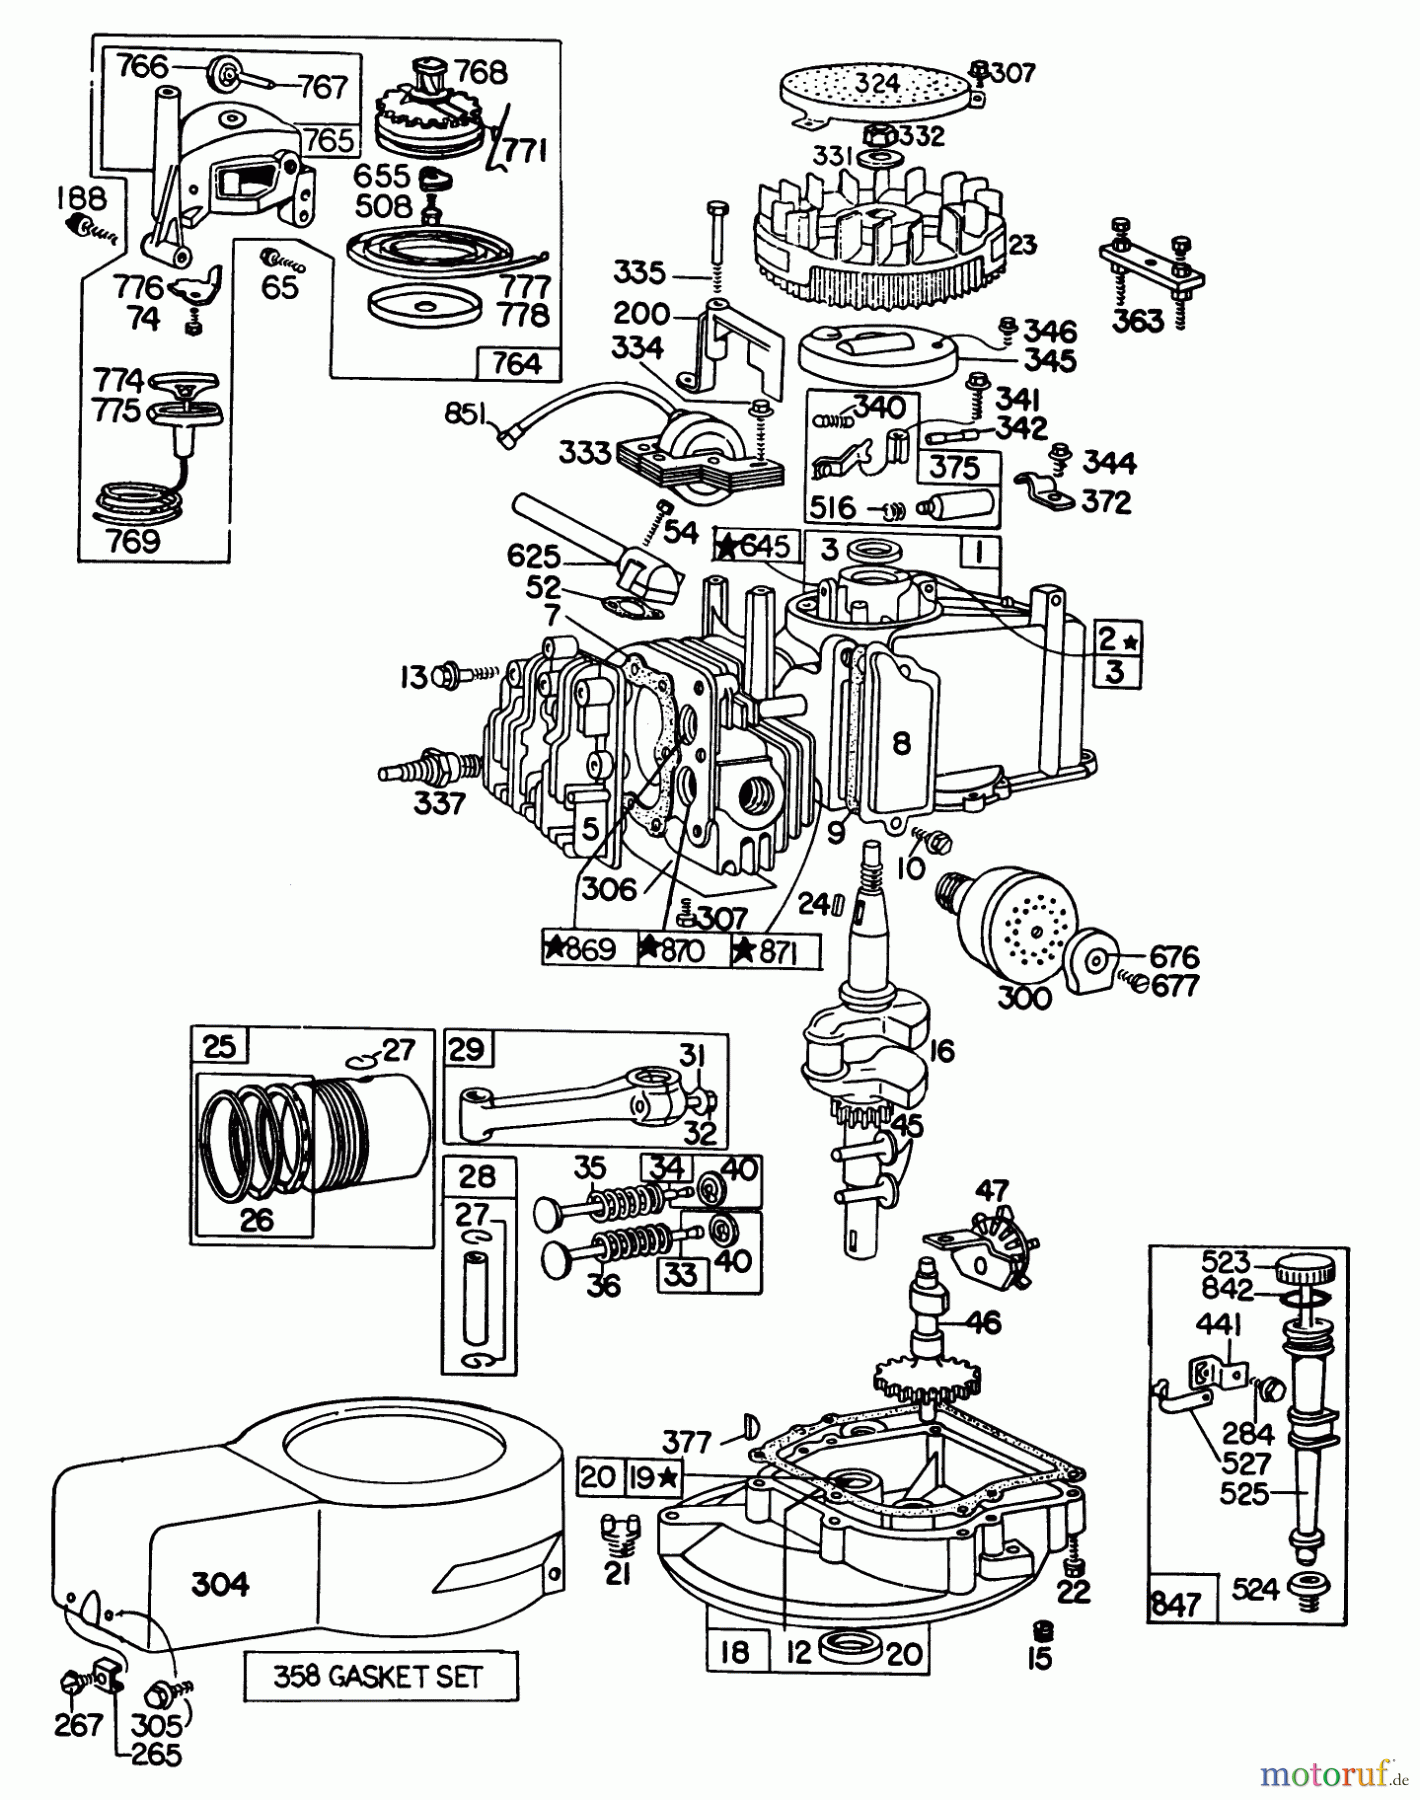  Toro Neu Mowers, Walk-Behind Seite 1 16310 - Toro Lawnmower, 1980 (0000001-0999999) ENGINE BRIGGS & STRATTON MODEL 92508-1000-02 FOR 19